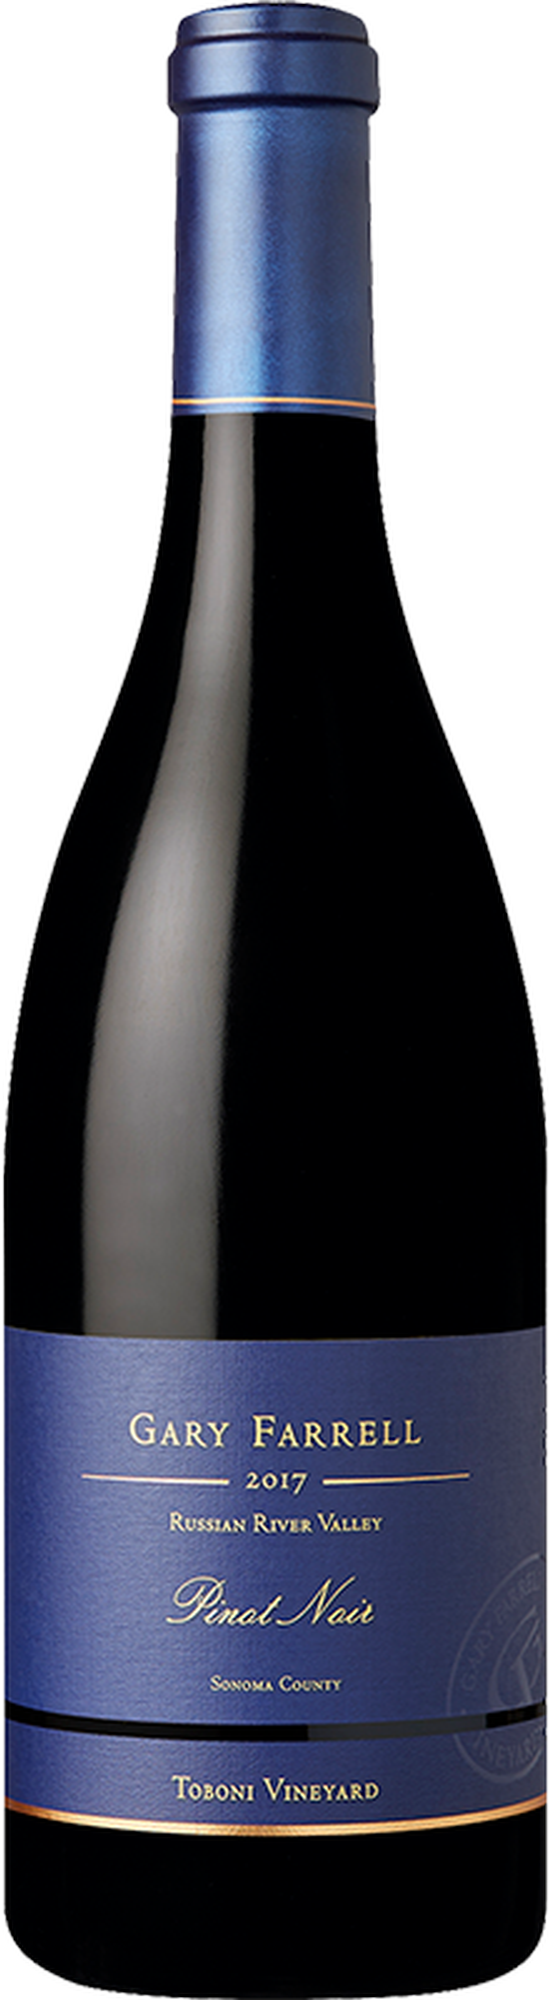 2017 Toboni Vineyard Pinot Noir